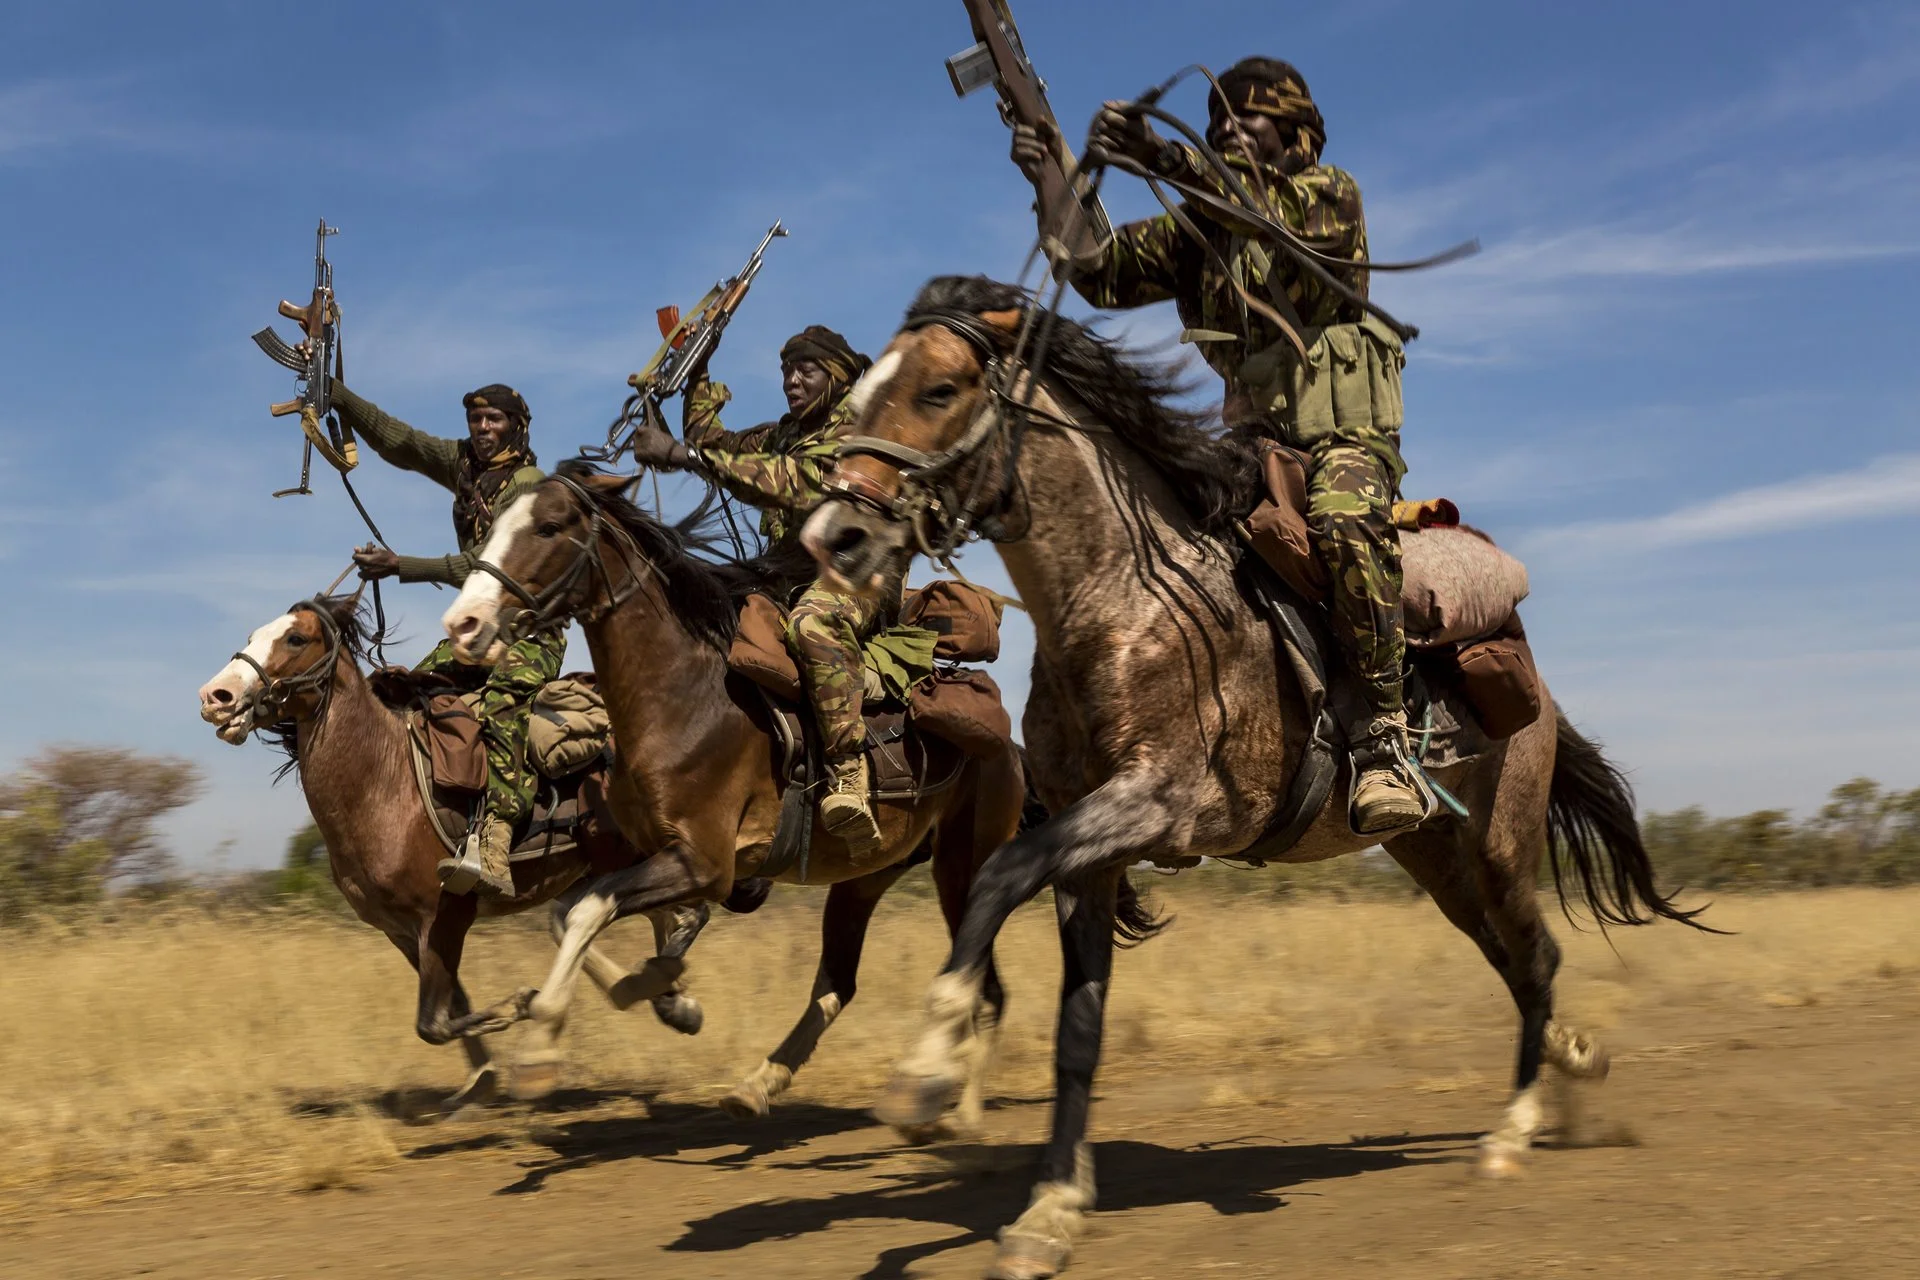 Los guardabosques exhiben sus habilidades de equitación cuando regresan a la base en el Parque Nacional Zakouma, Chad, después de semanas patrullando elefantes.